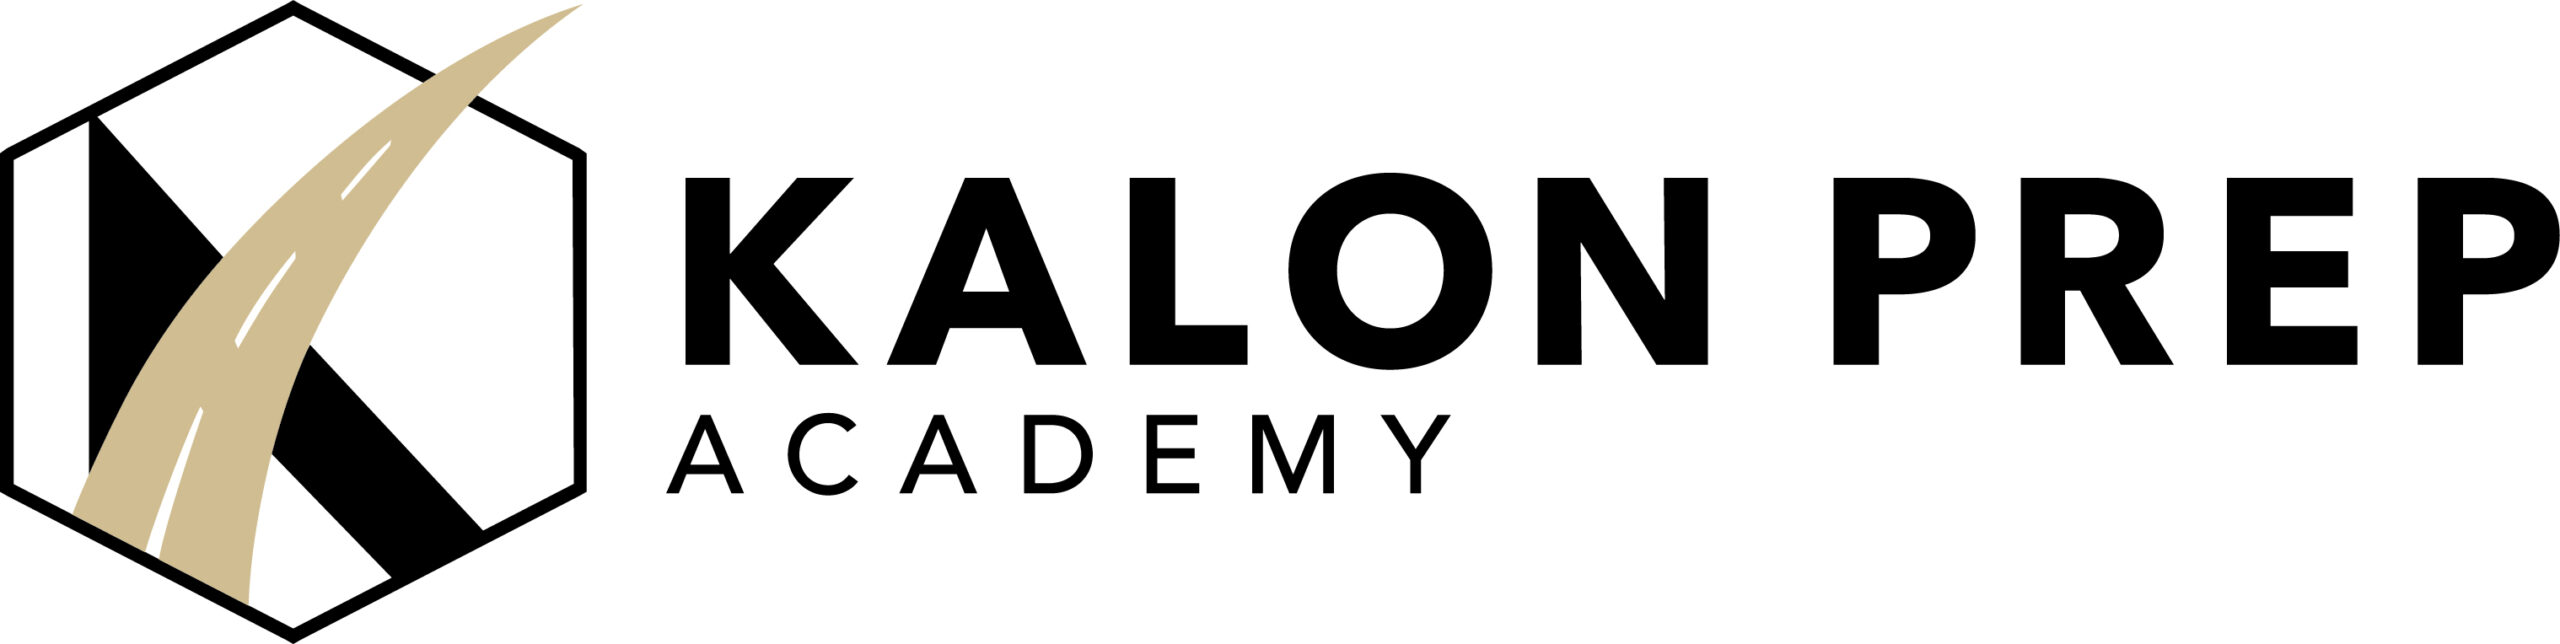 Kalon Prep Academy logo